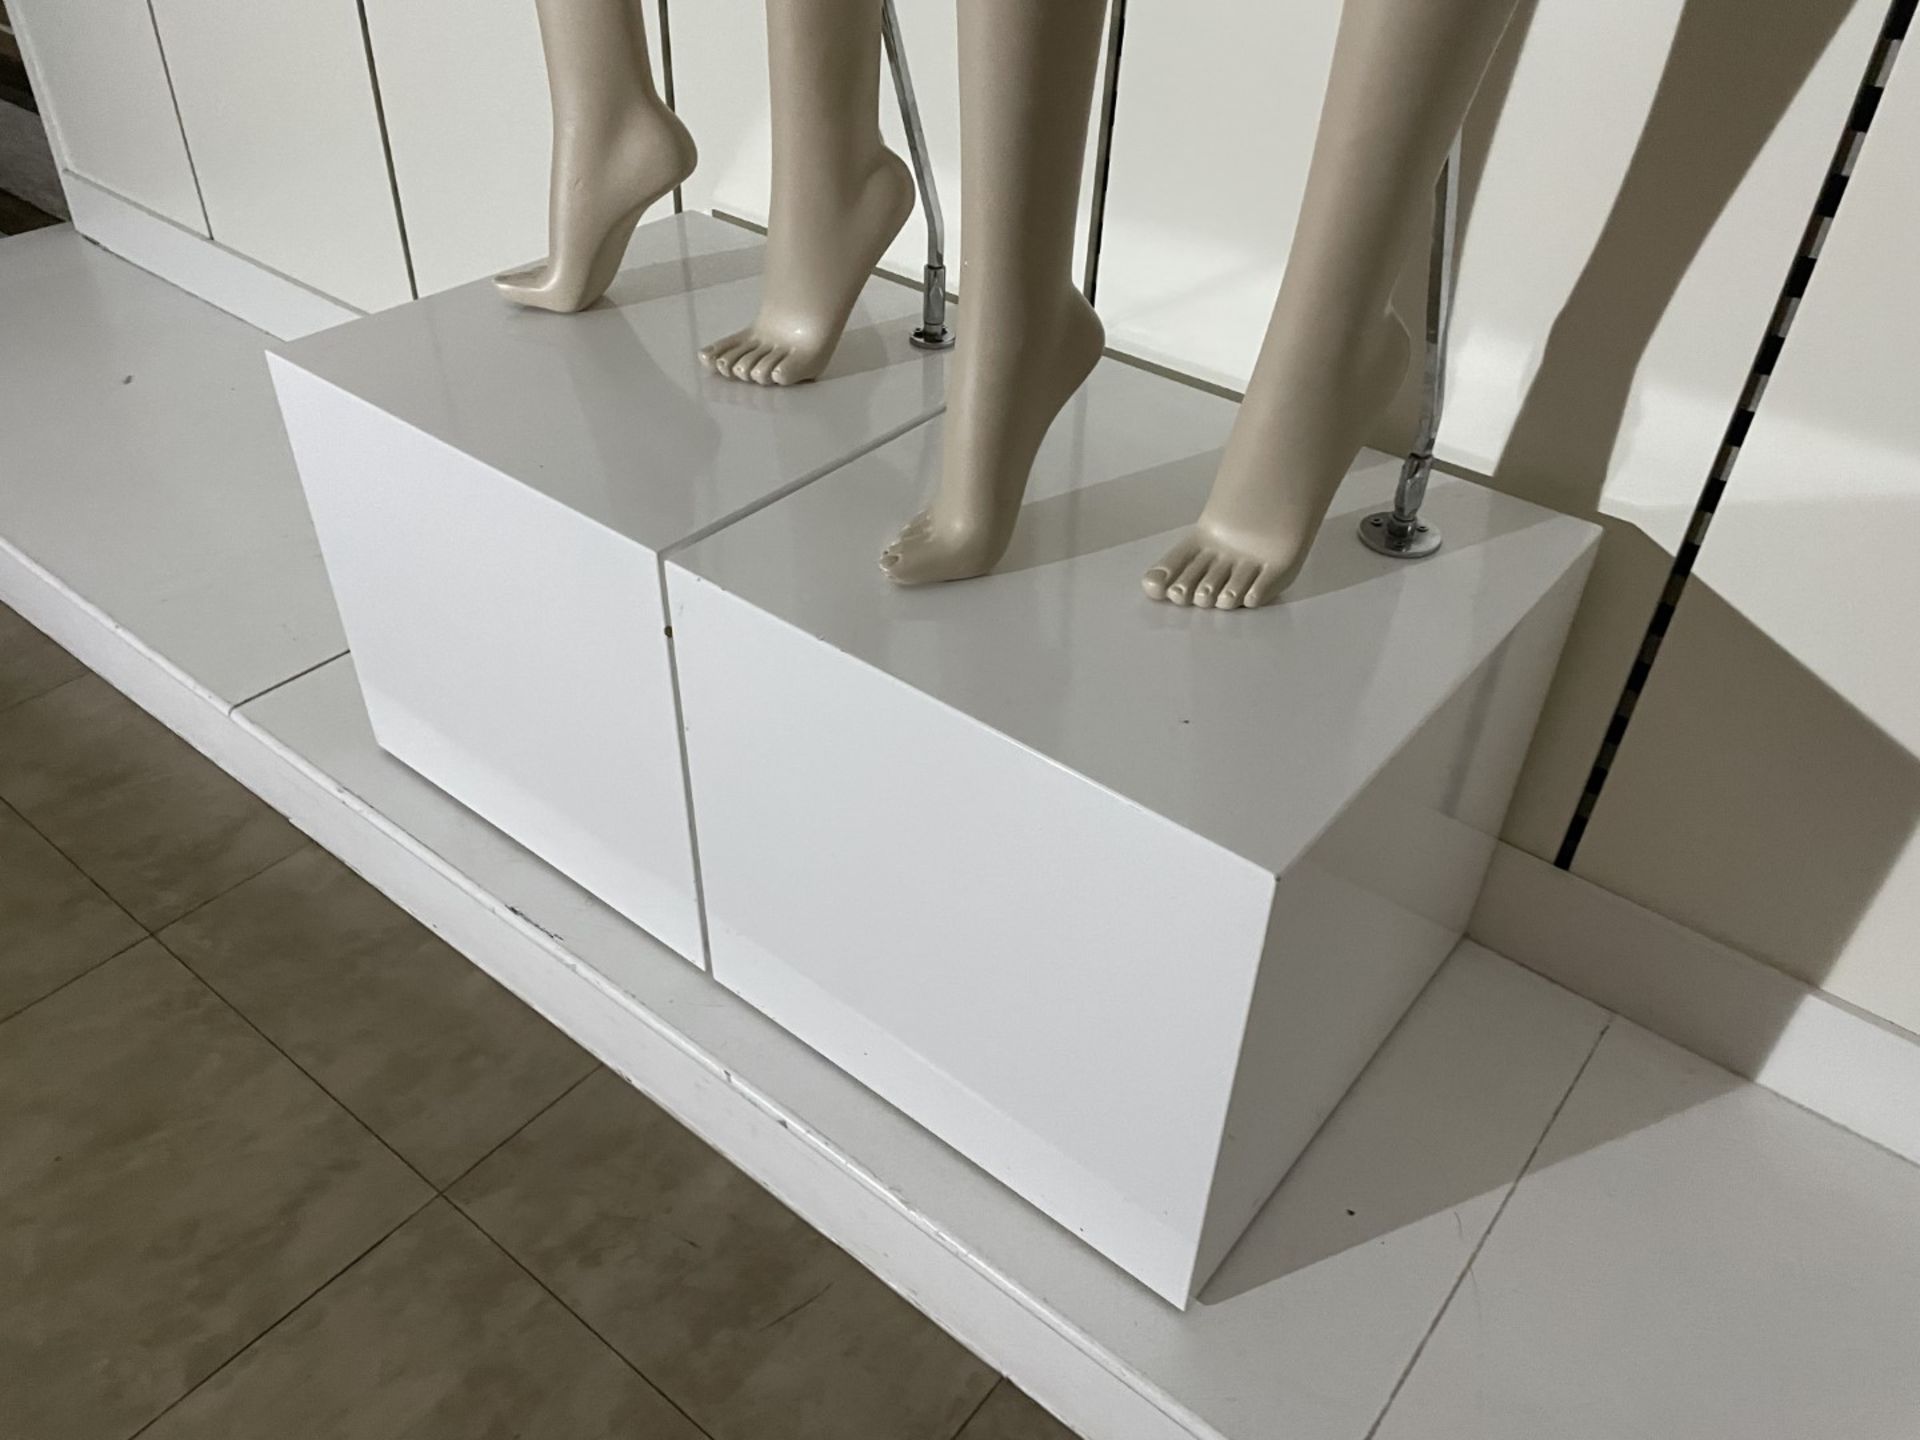 2 x Full Size Female Mannequins on Pedestal Plinth Stands - CL670 - Ref: GEM236 - Location: - Image 3 of 11